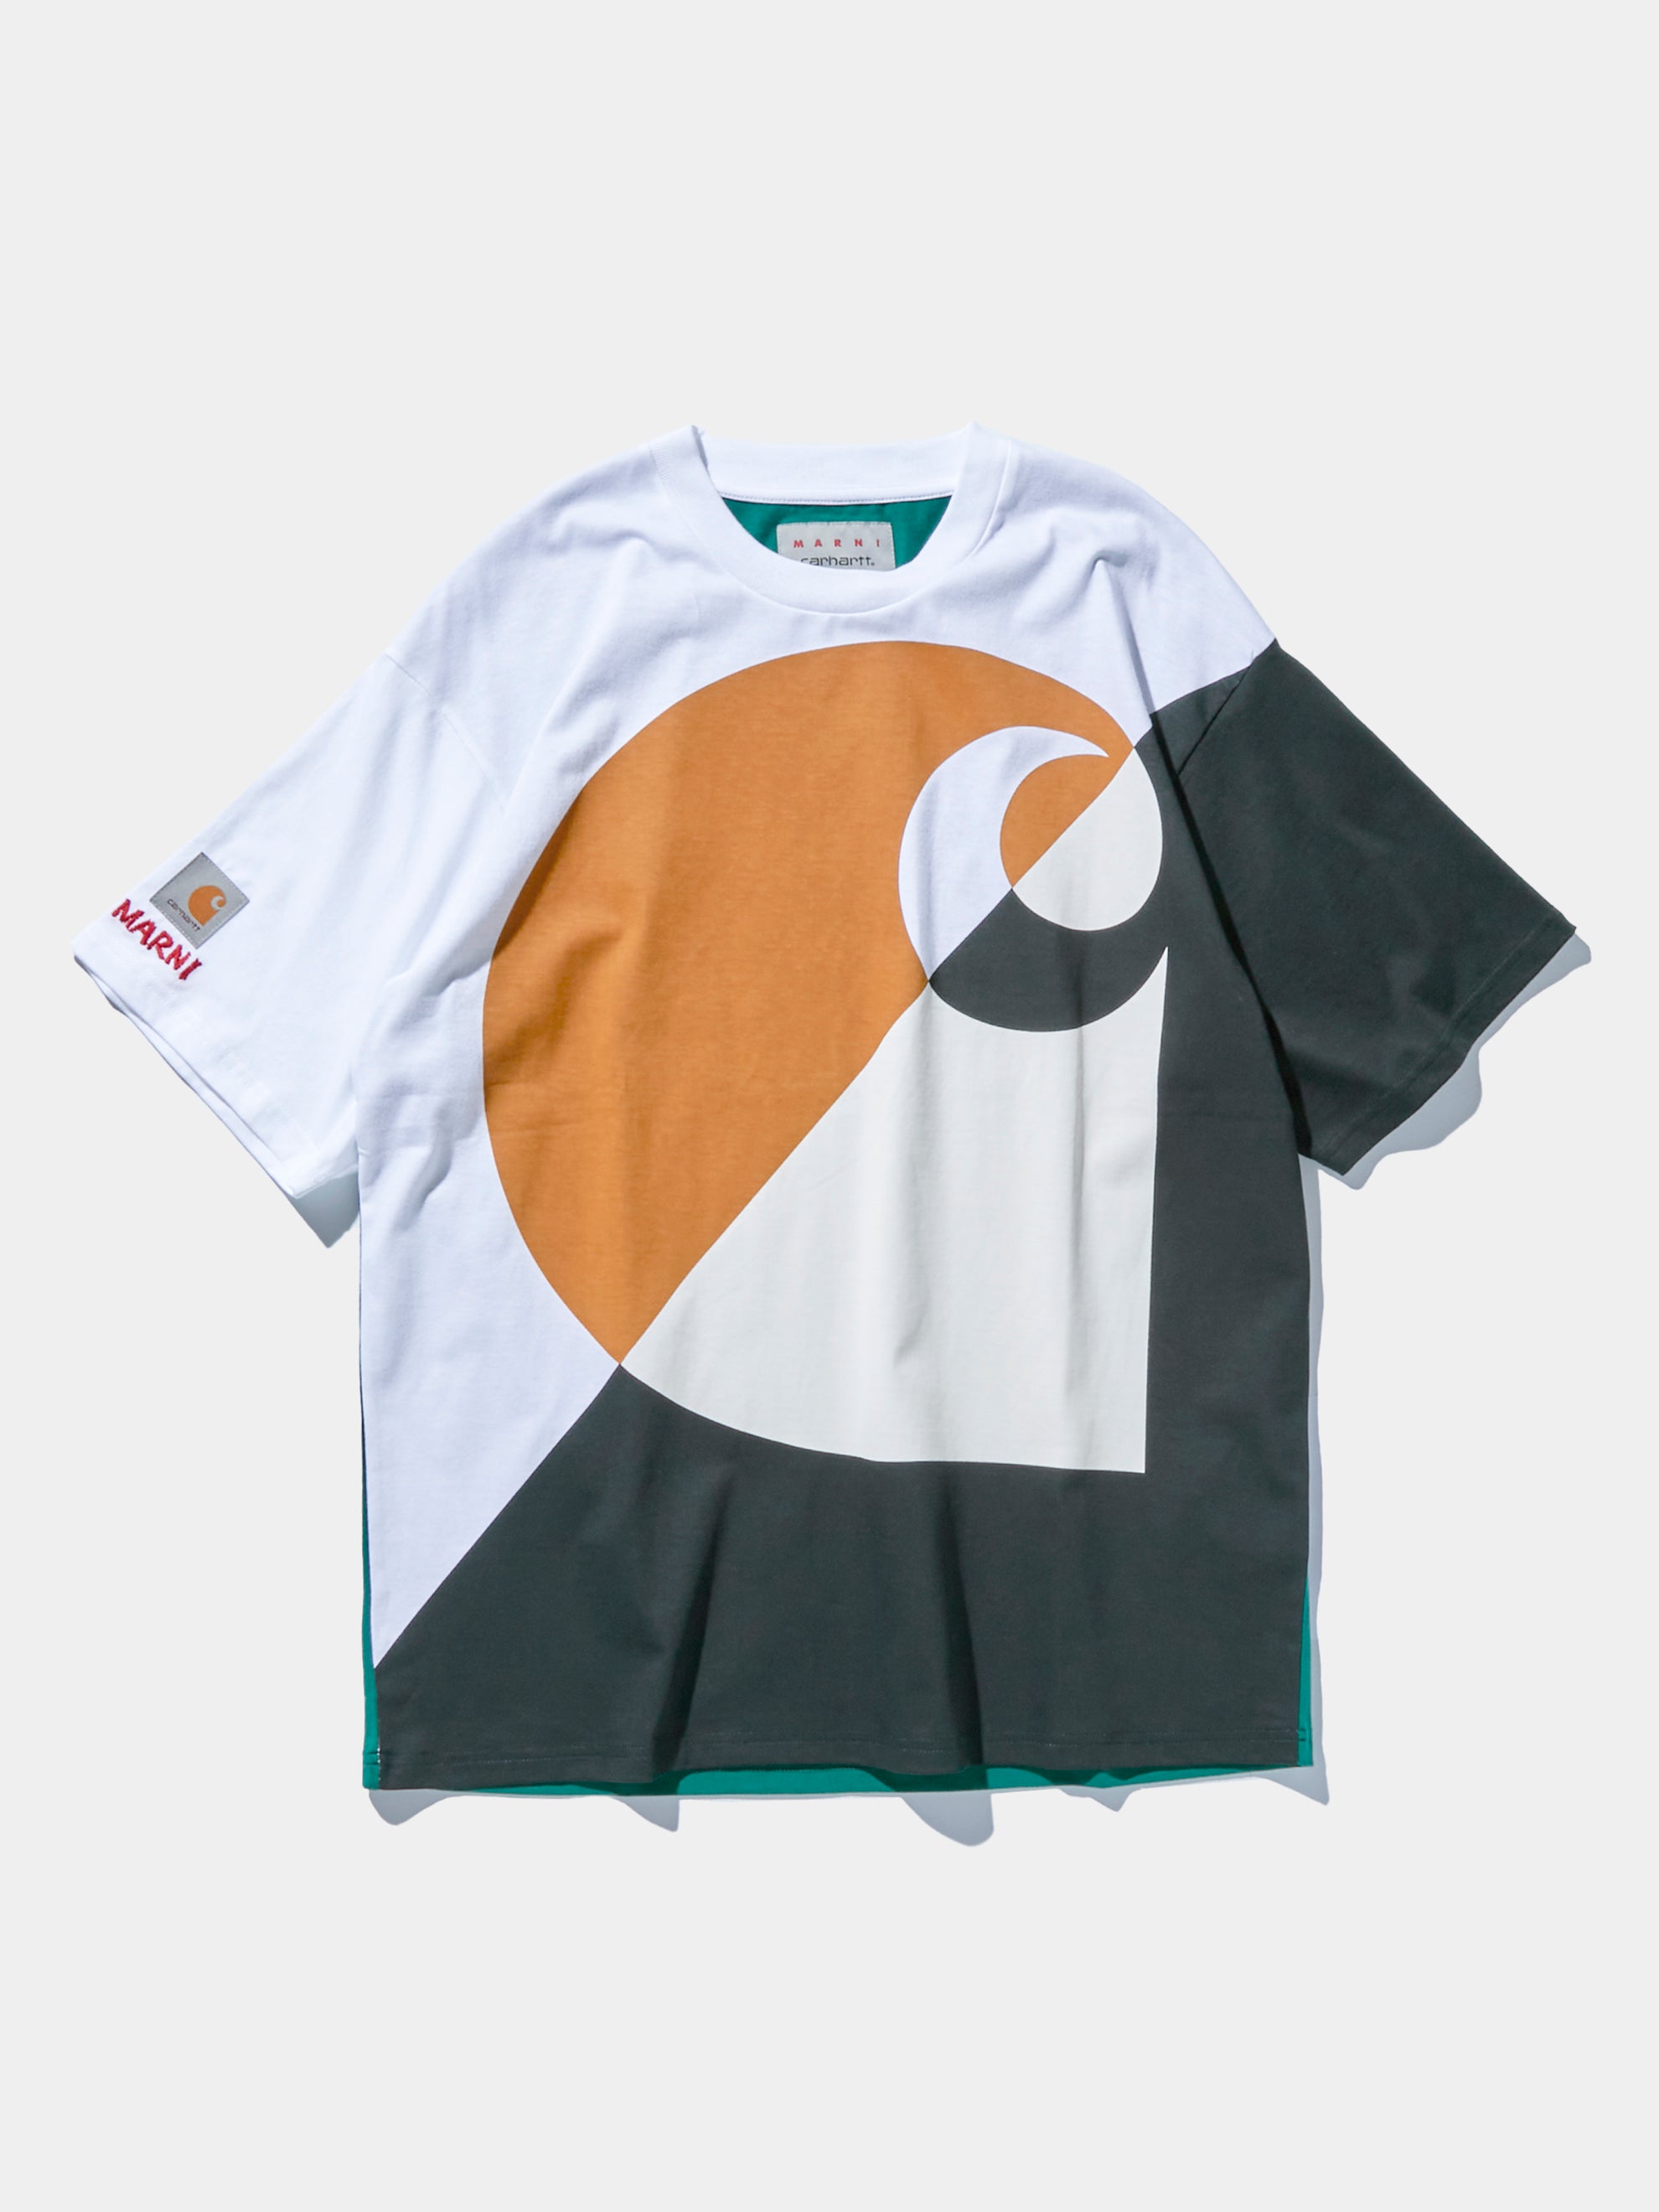 11,400円MARNI×carharttwip マルニ×カーハートT-shirts Tシャツ